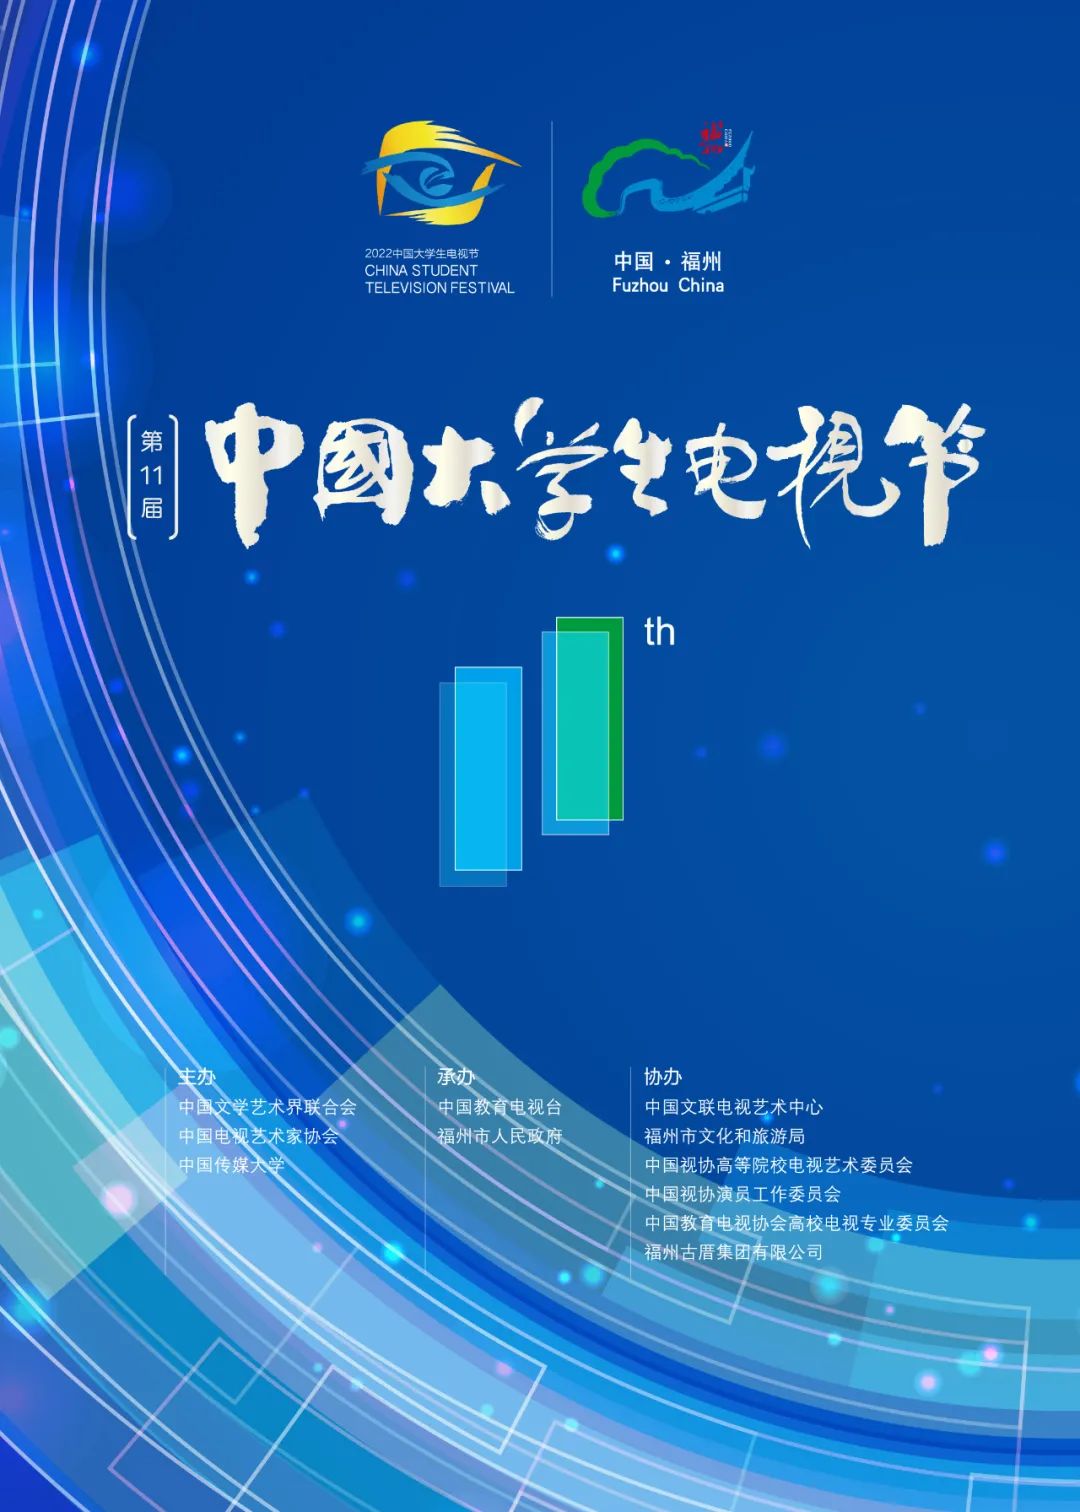 第十一届中国大学生电视节将于明年2月在福州举办